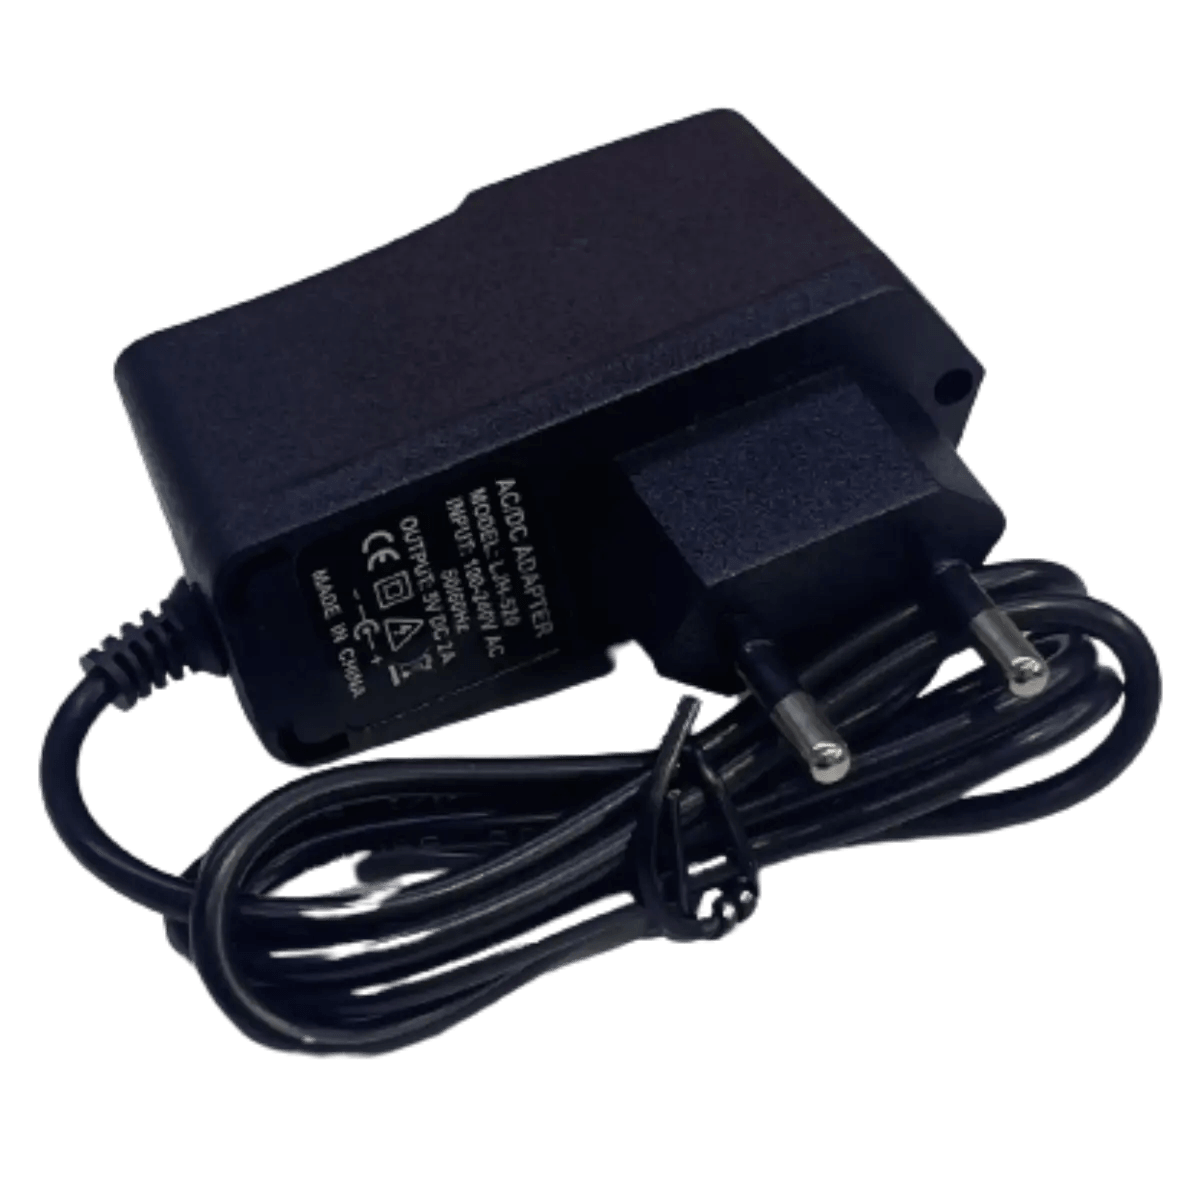 Accessoires Energie - Chargeur 5v pour Ordinateur Portable